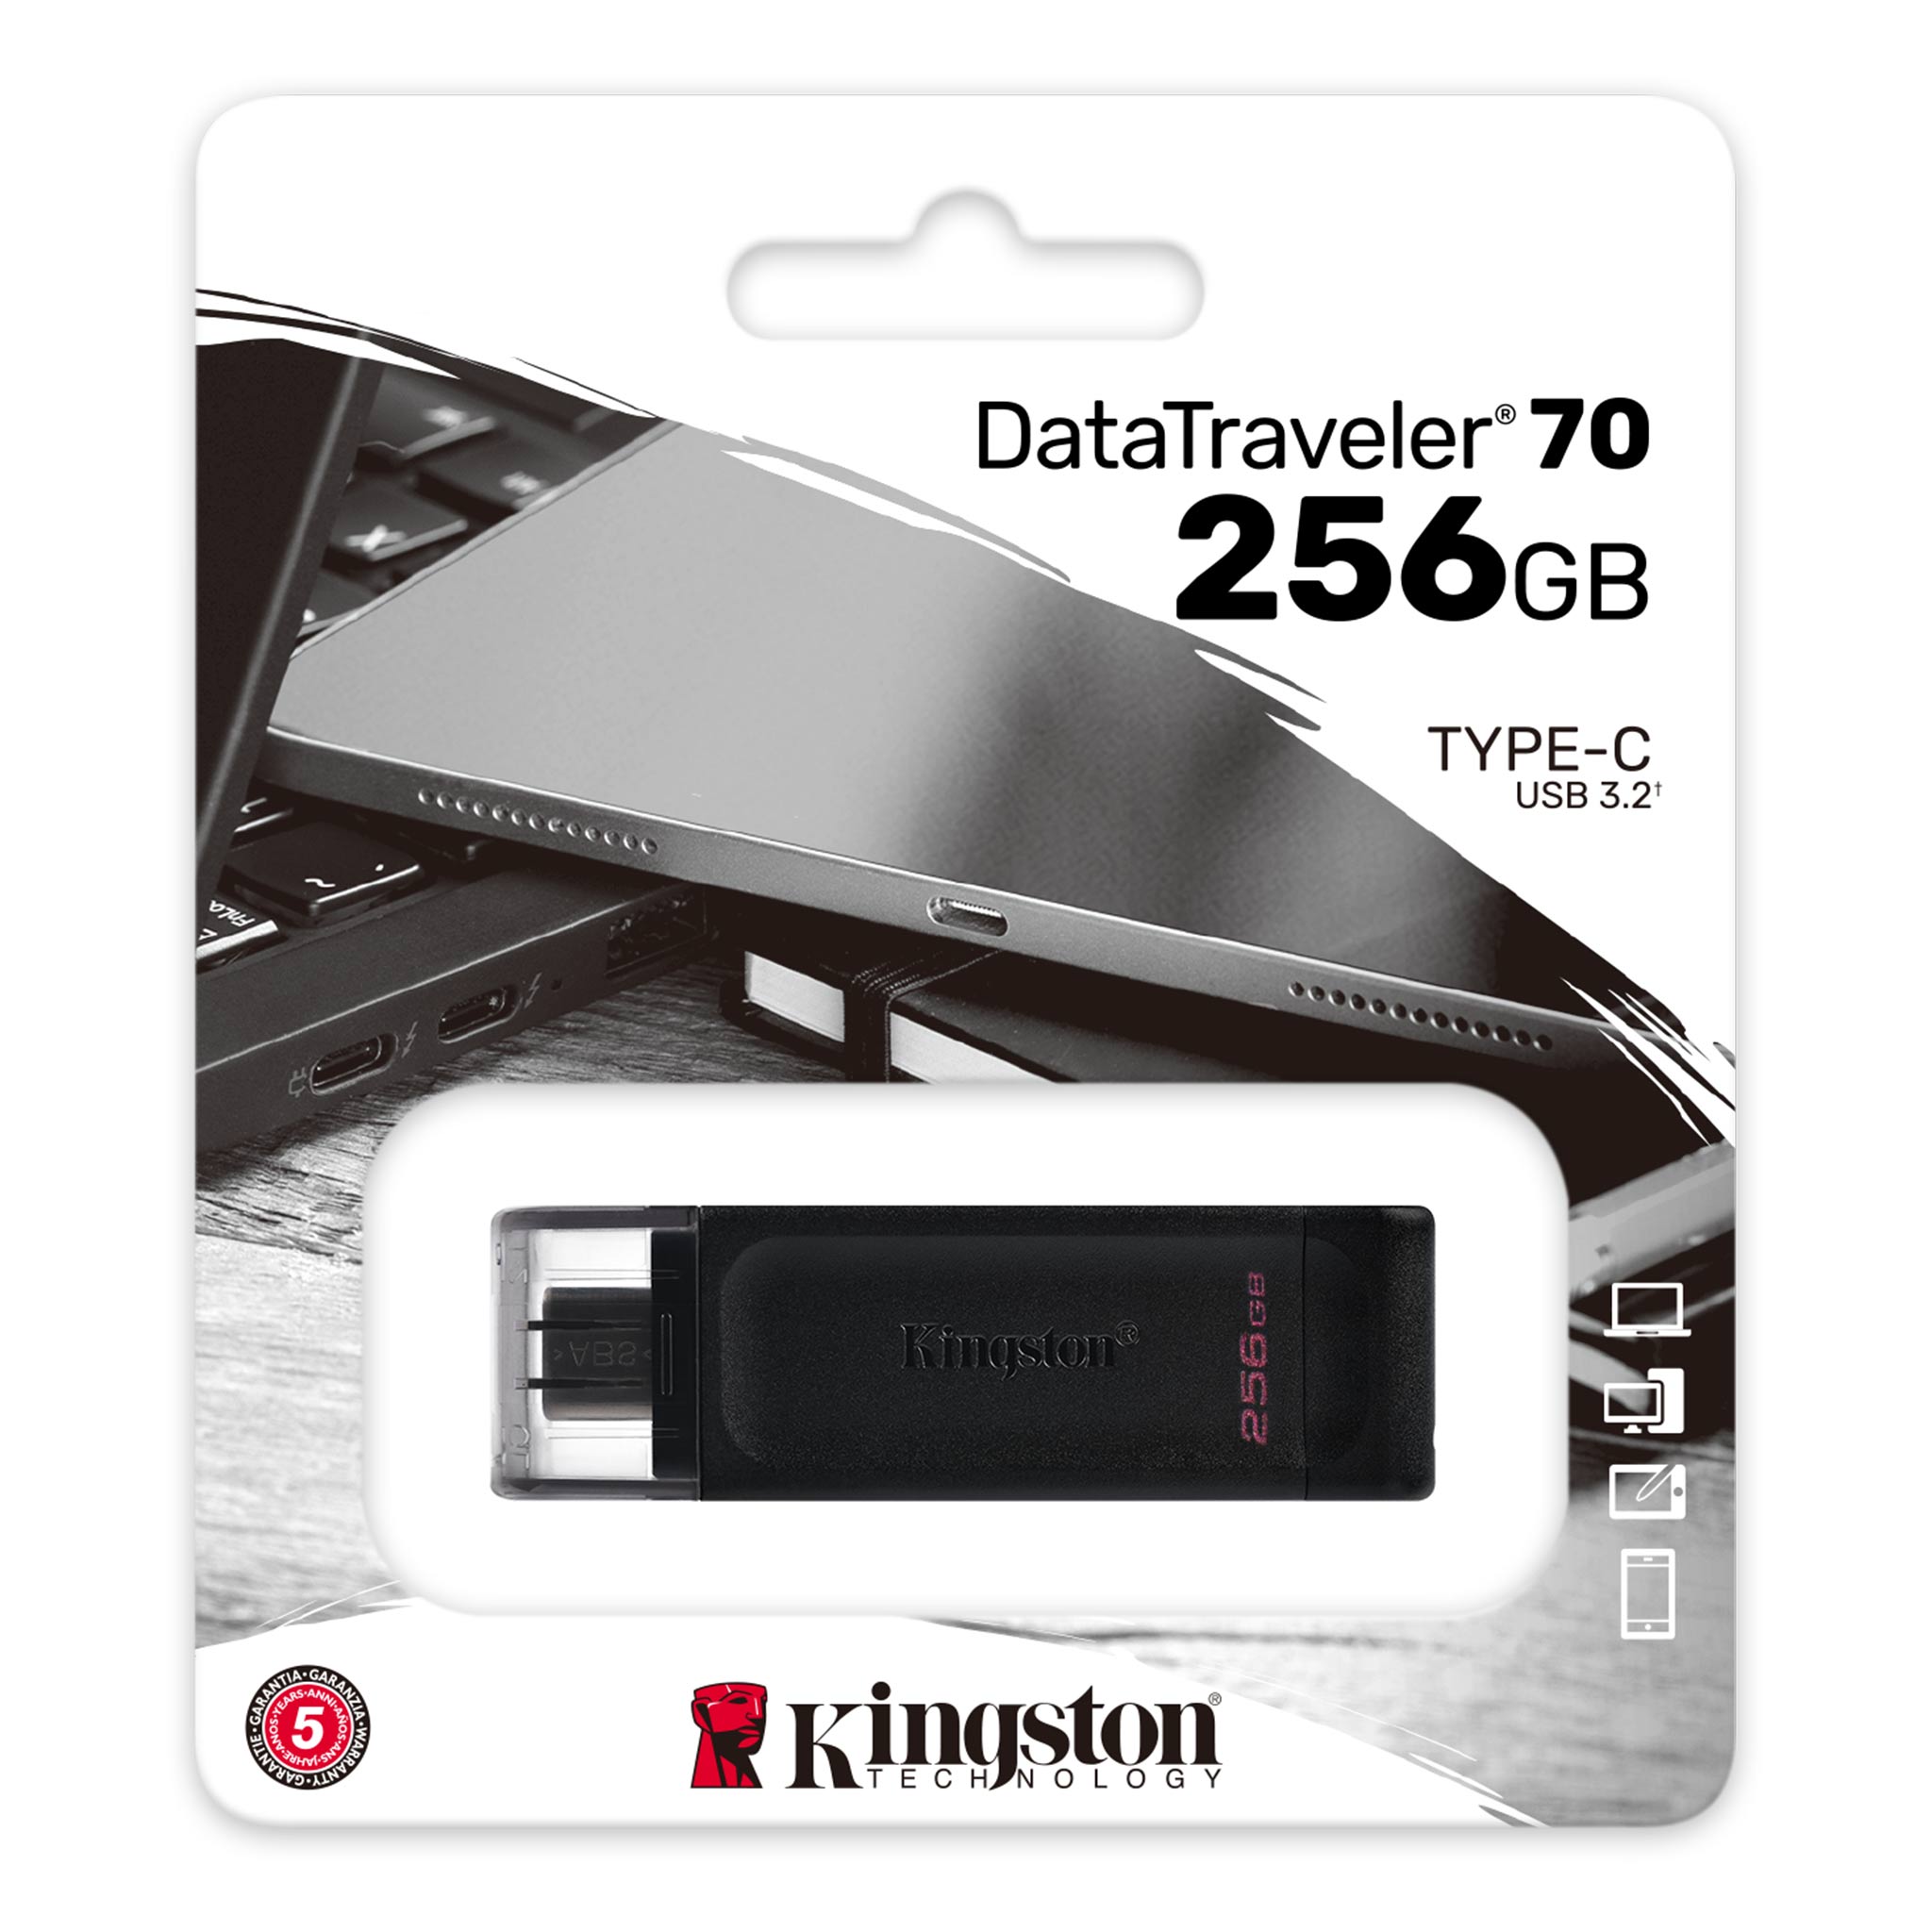 KINGSTONE 256GB USB-C 3.2 Gen 1 DataTraveler 70